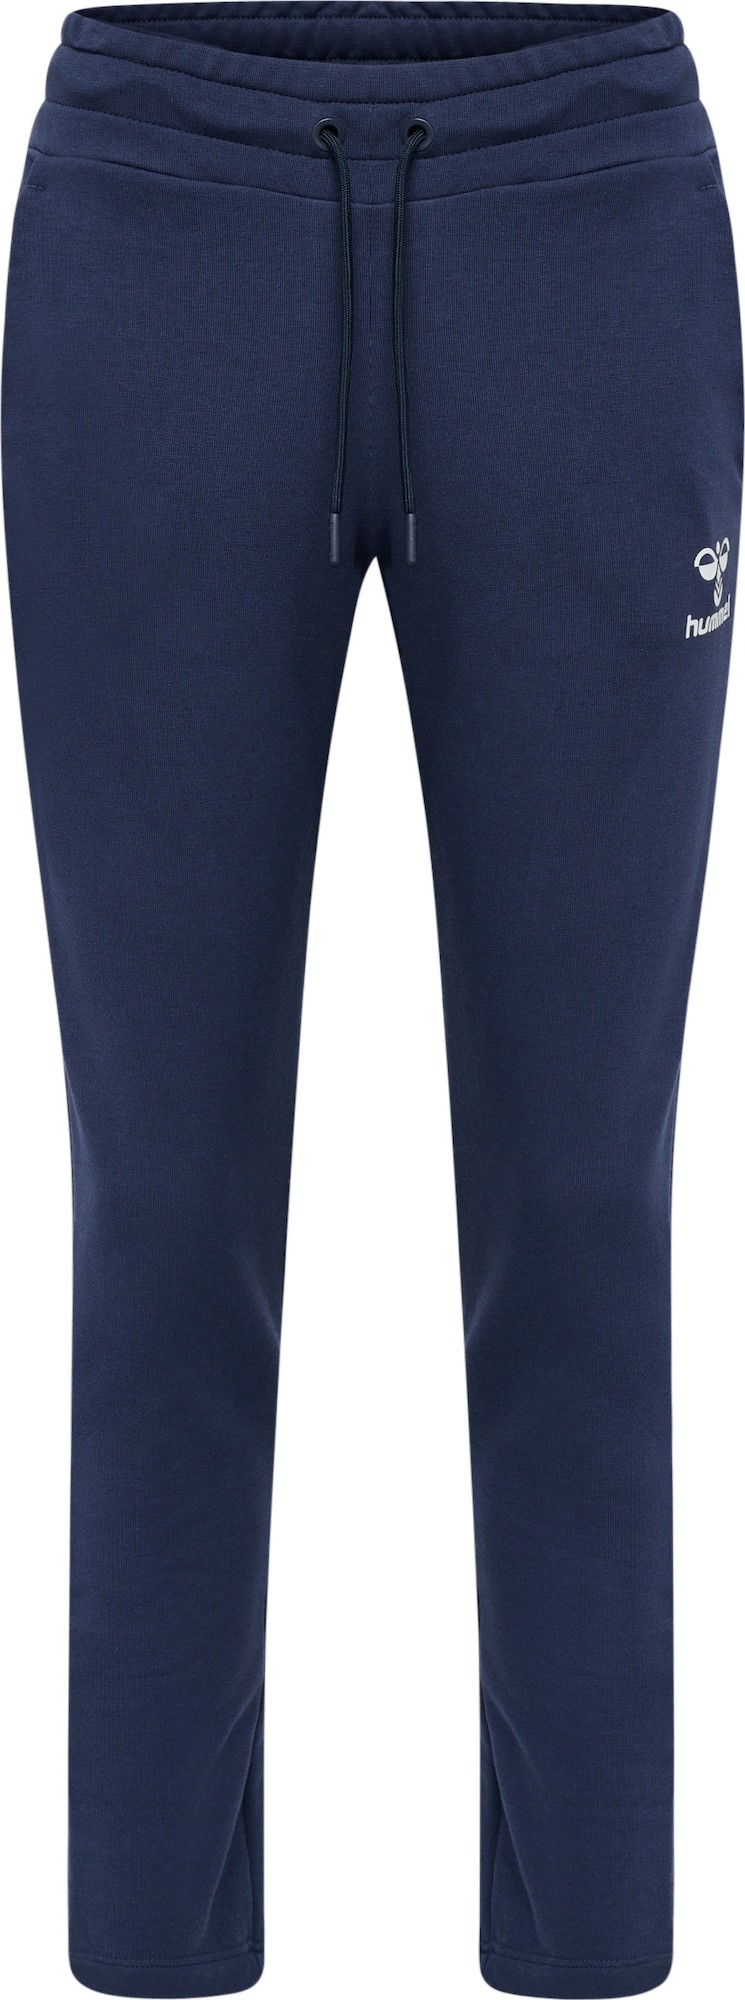 Hummel Sportovní kalhoty námořnická modř / bílá